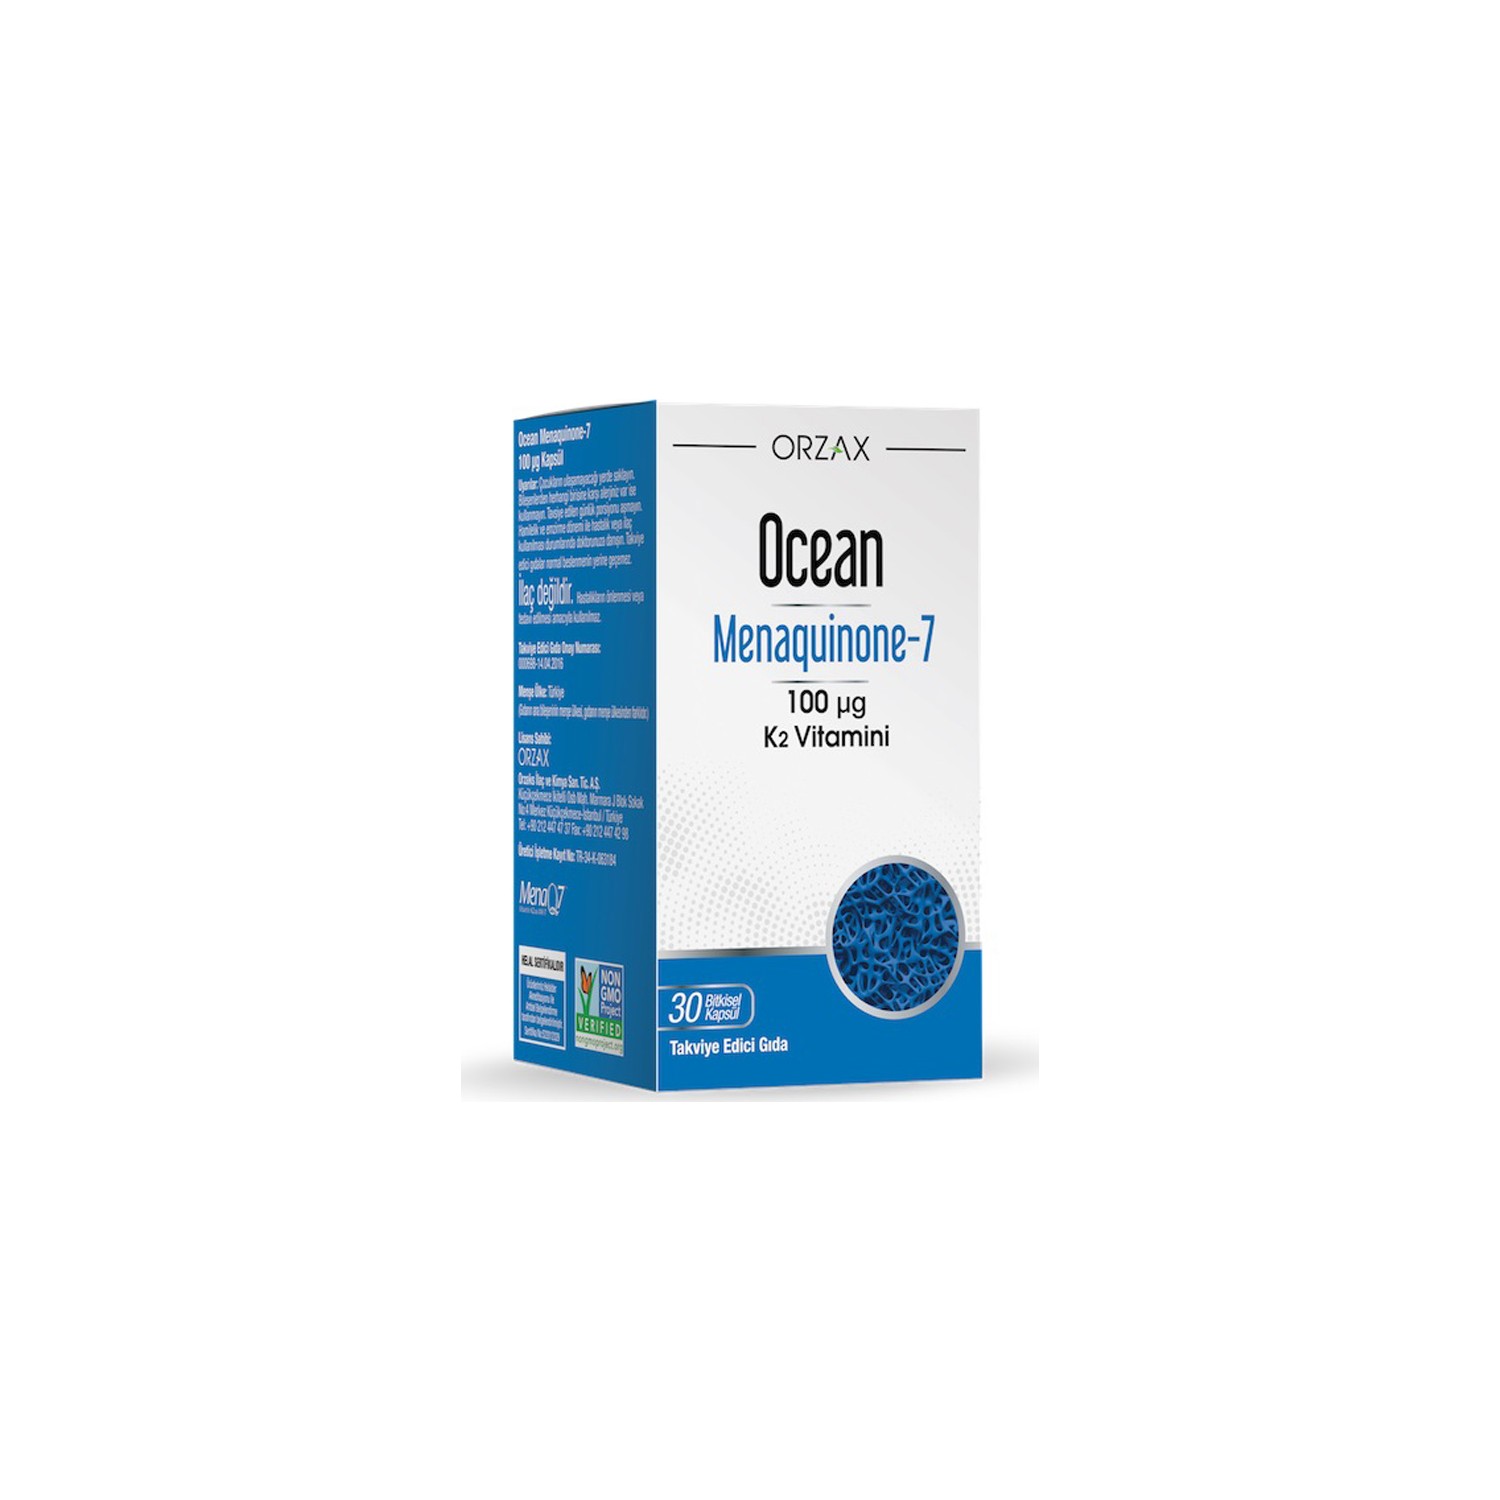 Пищевая добавка Orzax Ocean Mk-7 Vitamin К2 100 мкг, 30 капсул now foods mk 7 витамин k2 100 мкг 120 капсул в растительной оболочке